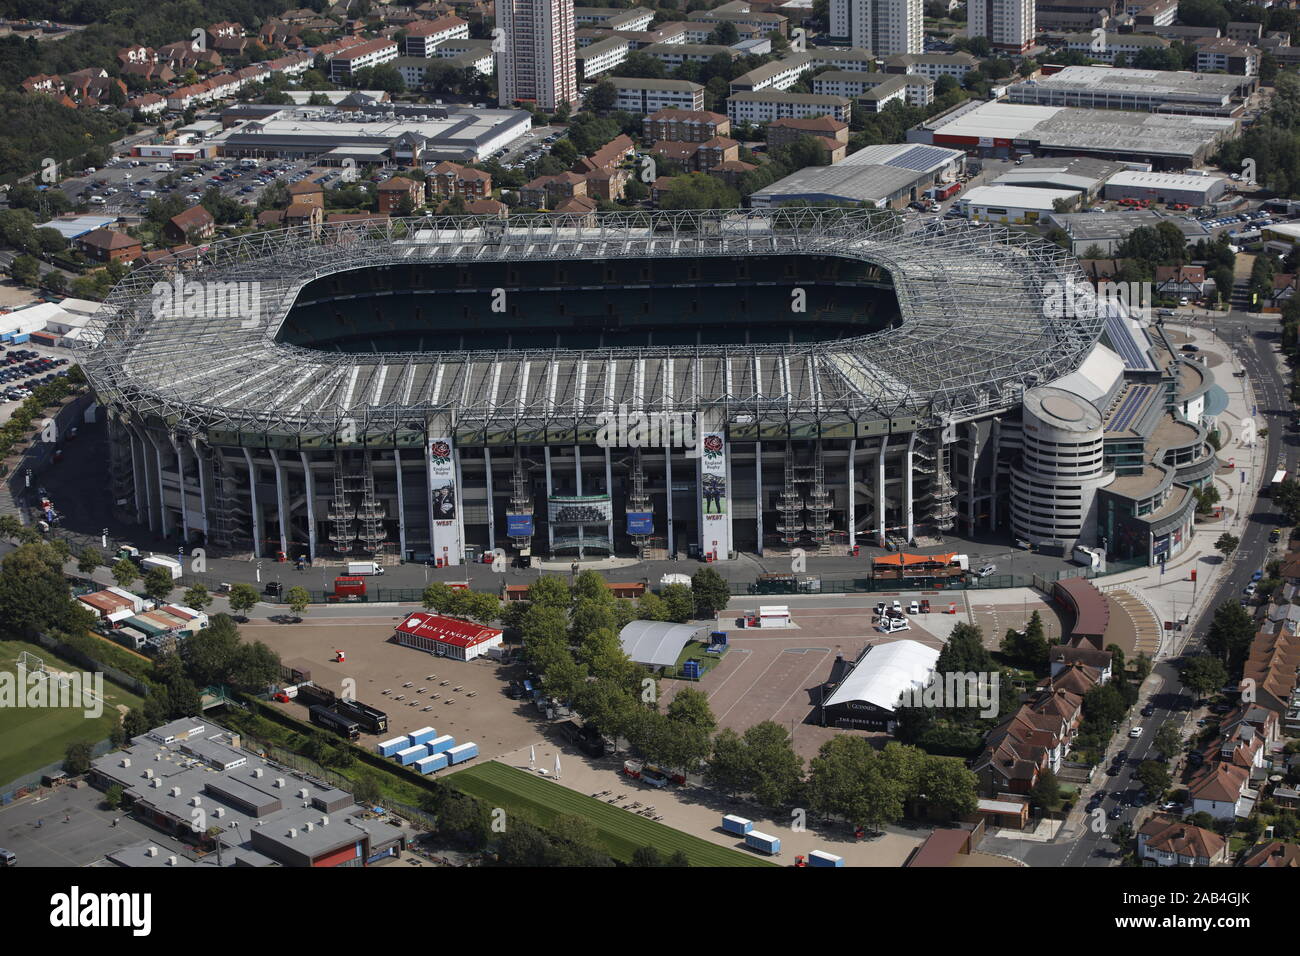 Aerial View of Twickenham Stadium, London, UK Stock Photo